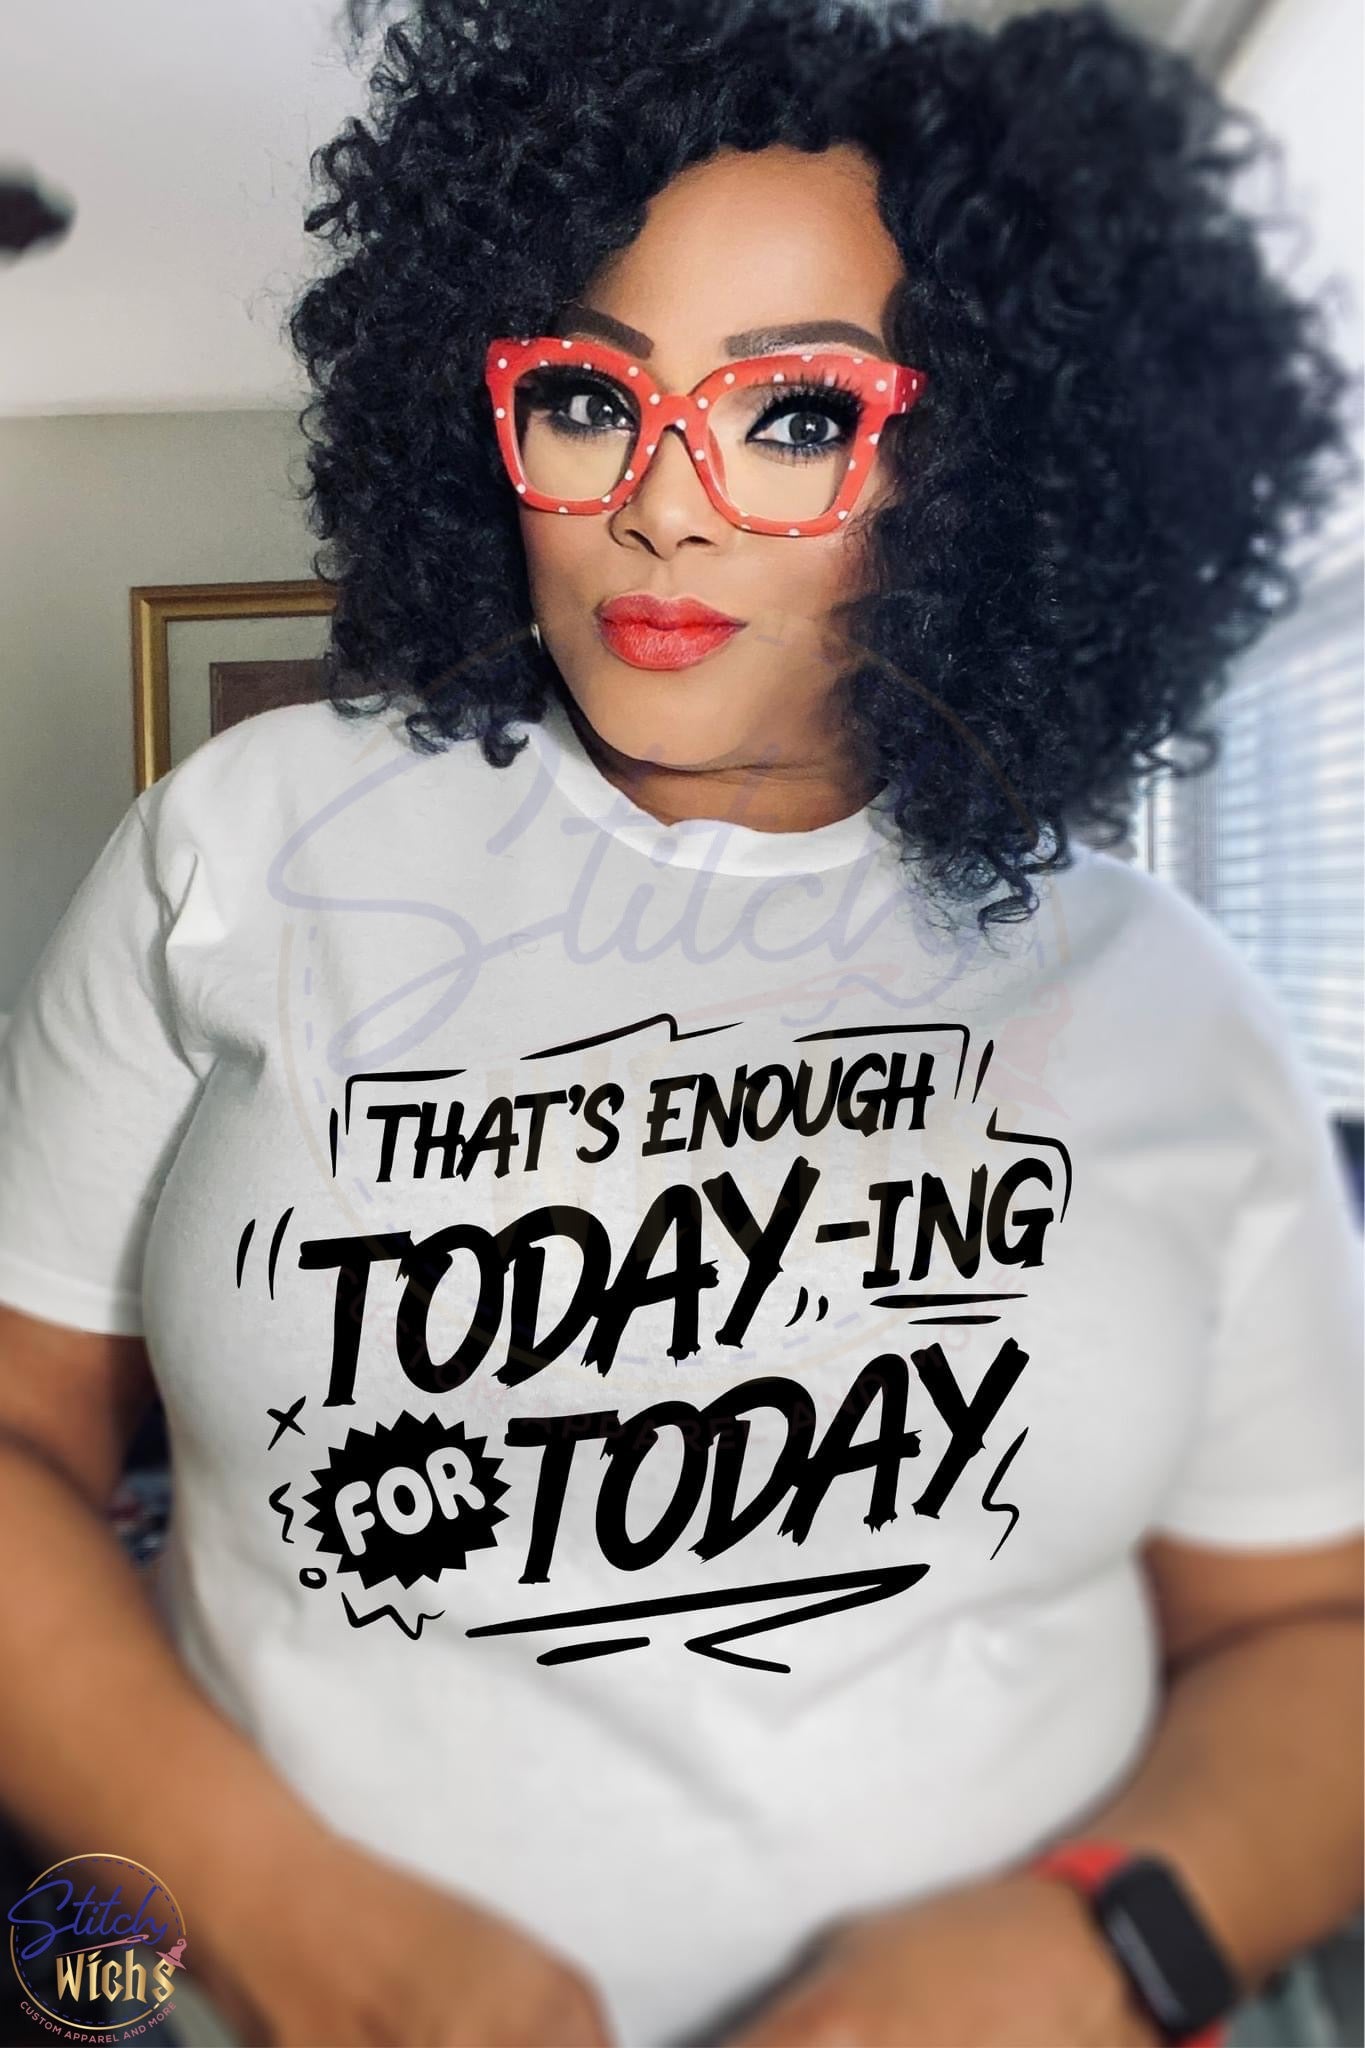 Enough Today-ing T-Shirt